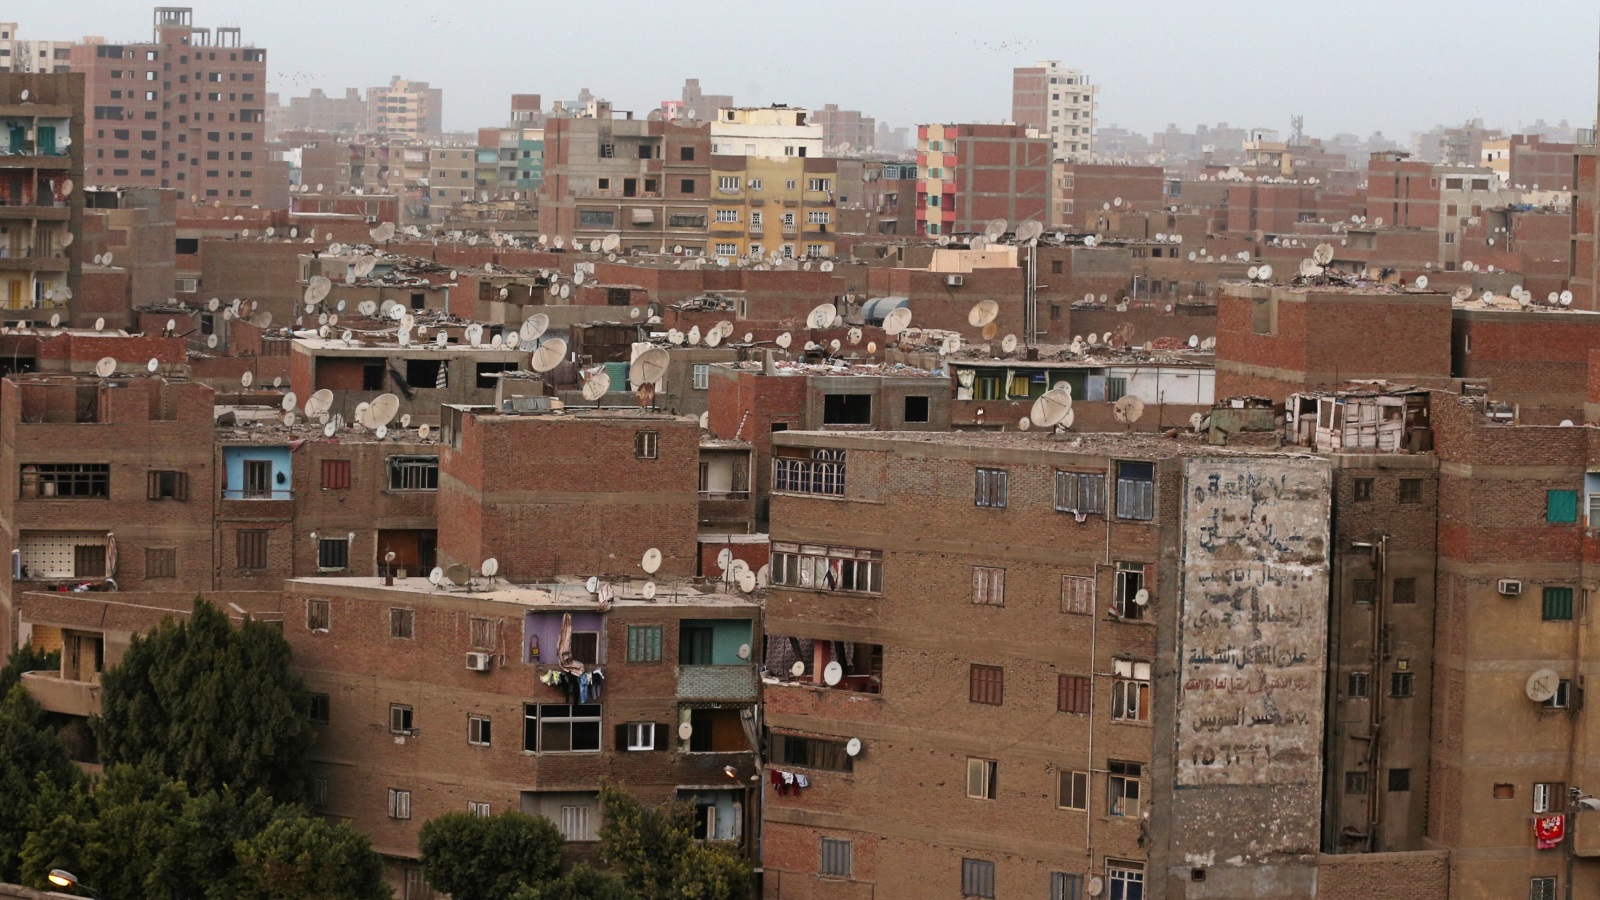 البيوت العشوائية سمة بارزة تتسم بها مدينة القاهرة.